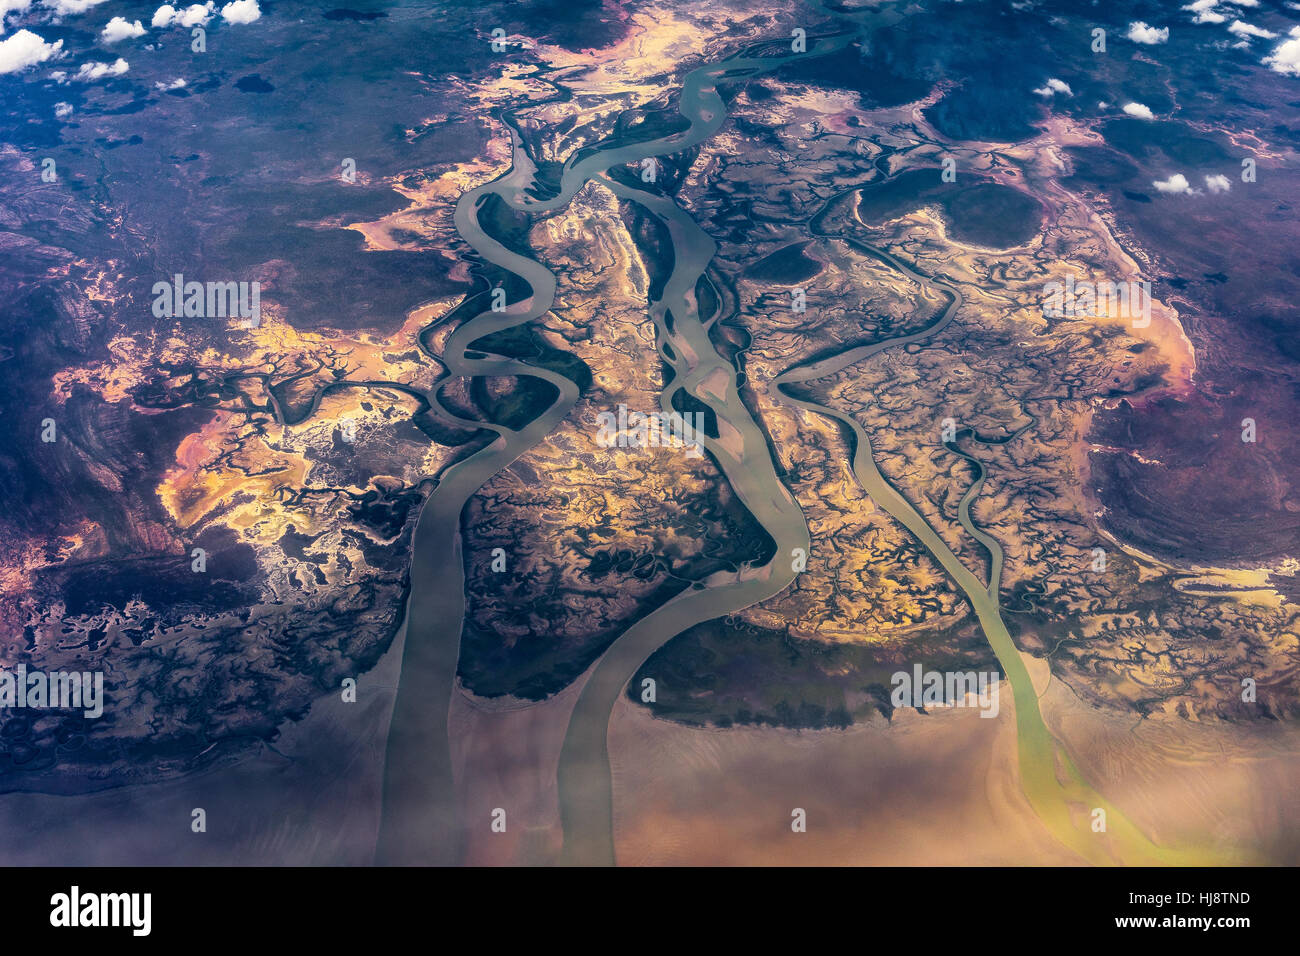 Vue aérienne est une ancienne Commune du Parc National, Territoire du Nord, Australie Banque D'Images